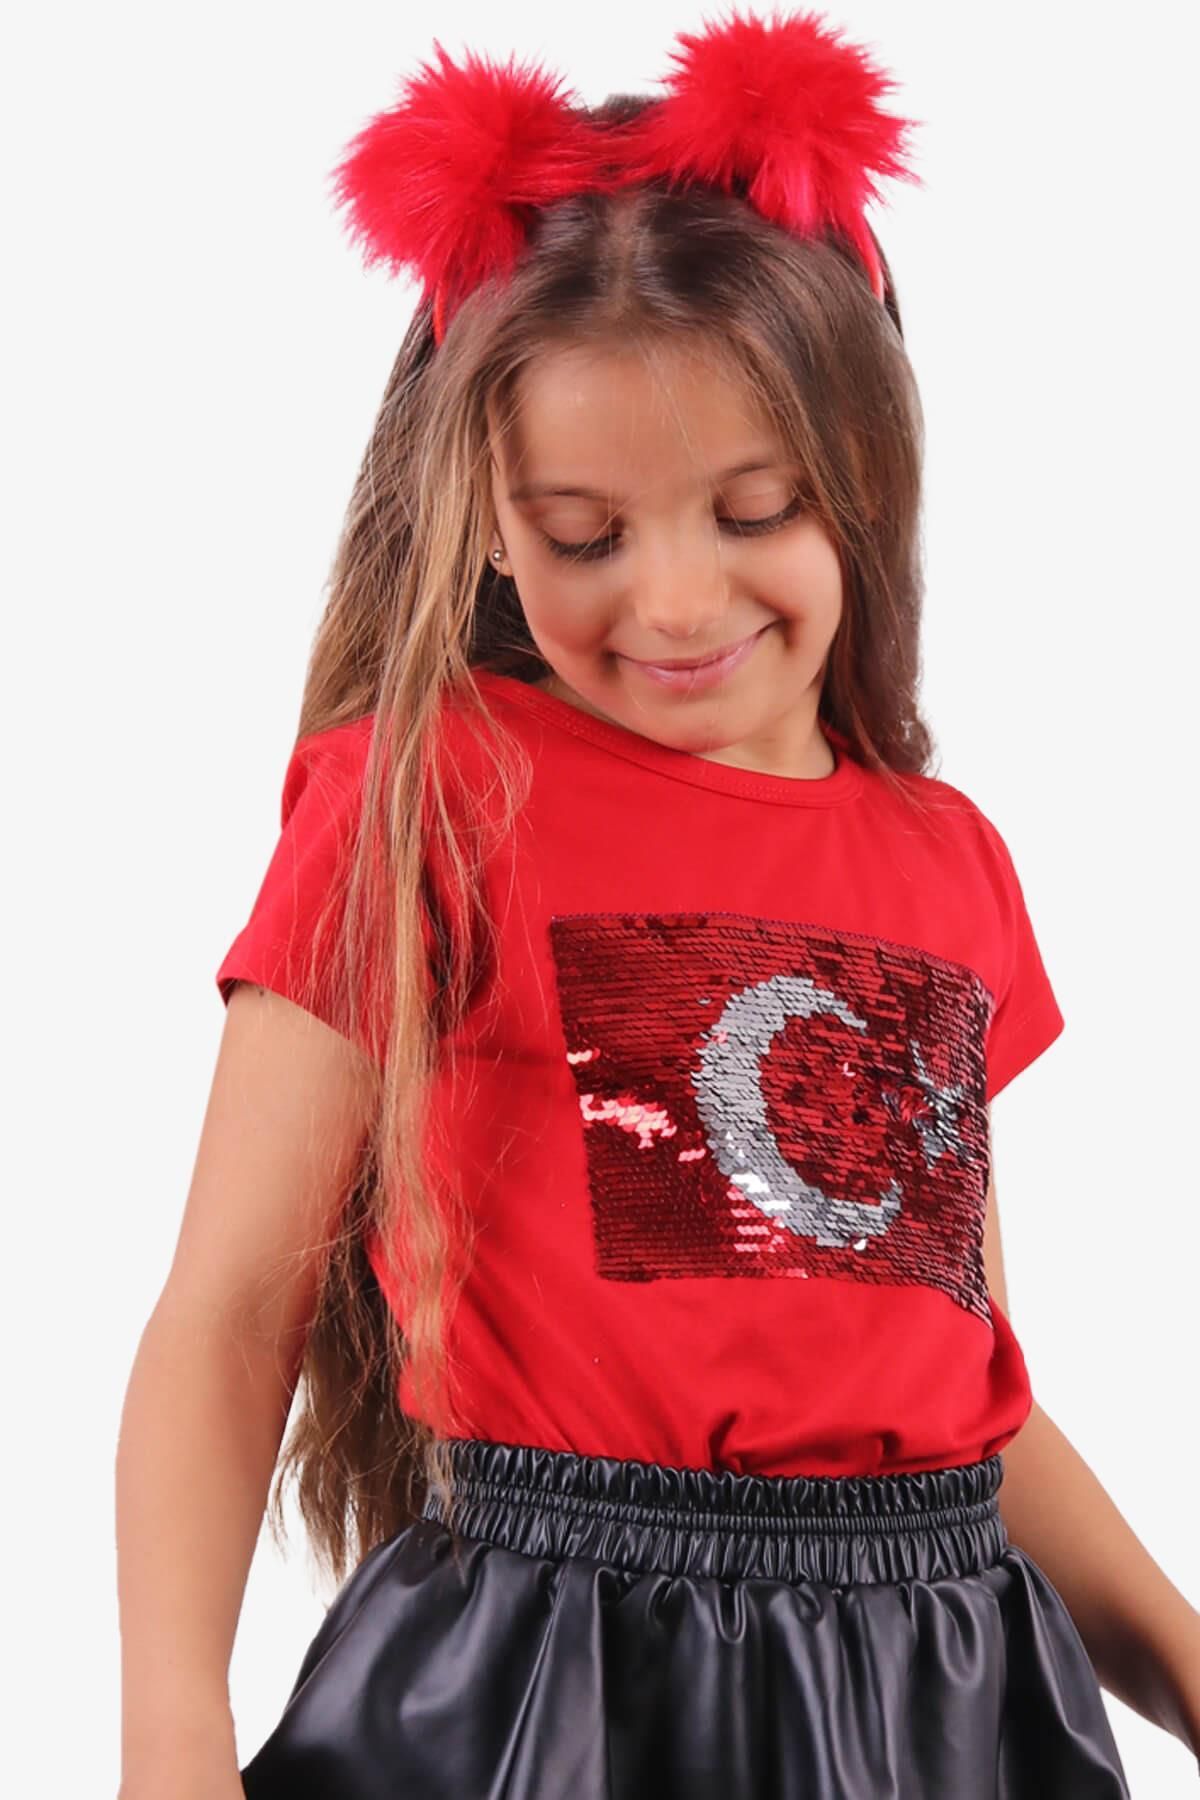 Breeze Kiz Çocuk Tişört Türk Bayraklı 4-14 Yaş, Kırmızı